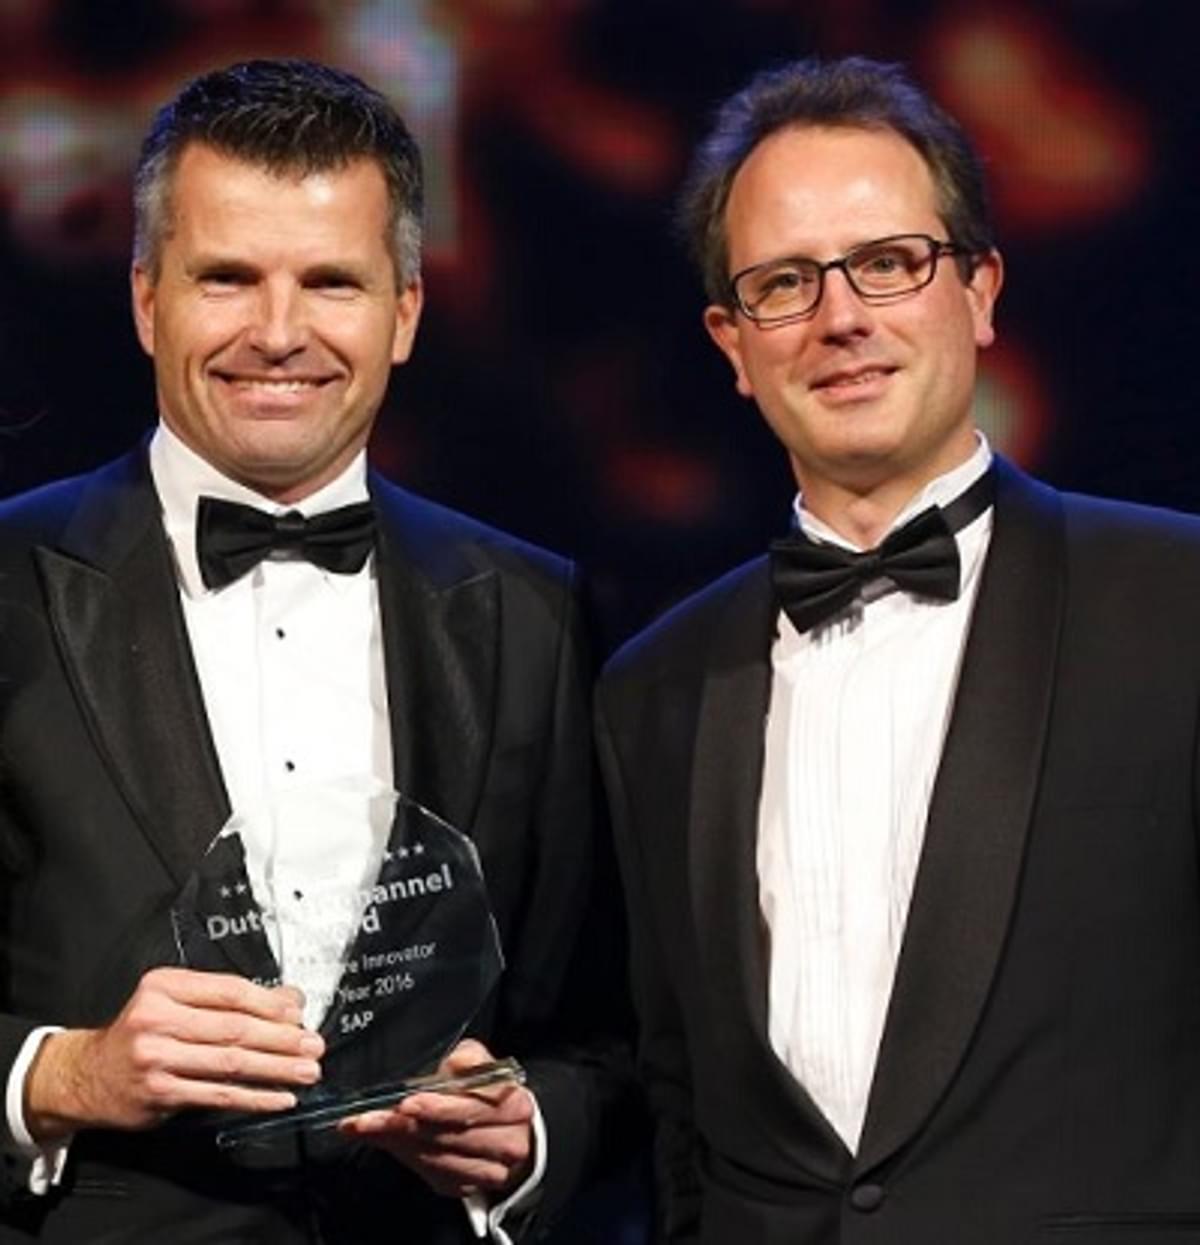 SAP is blij en trots met Dutch IT-Channel Award Best Software Innovator of the Year image